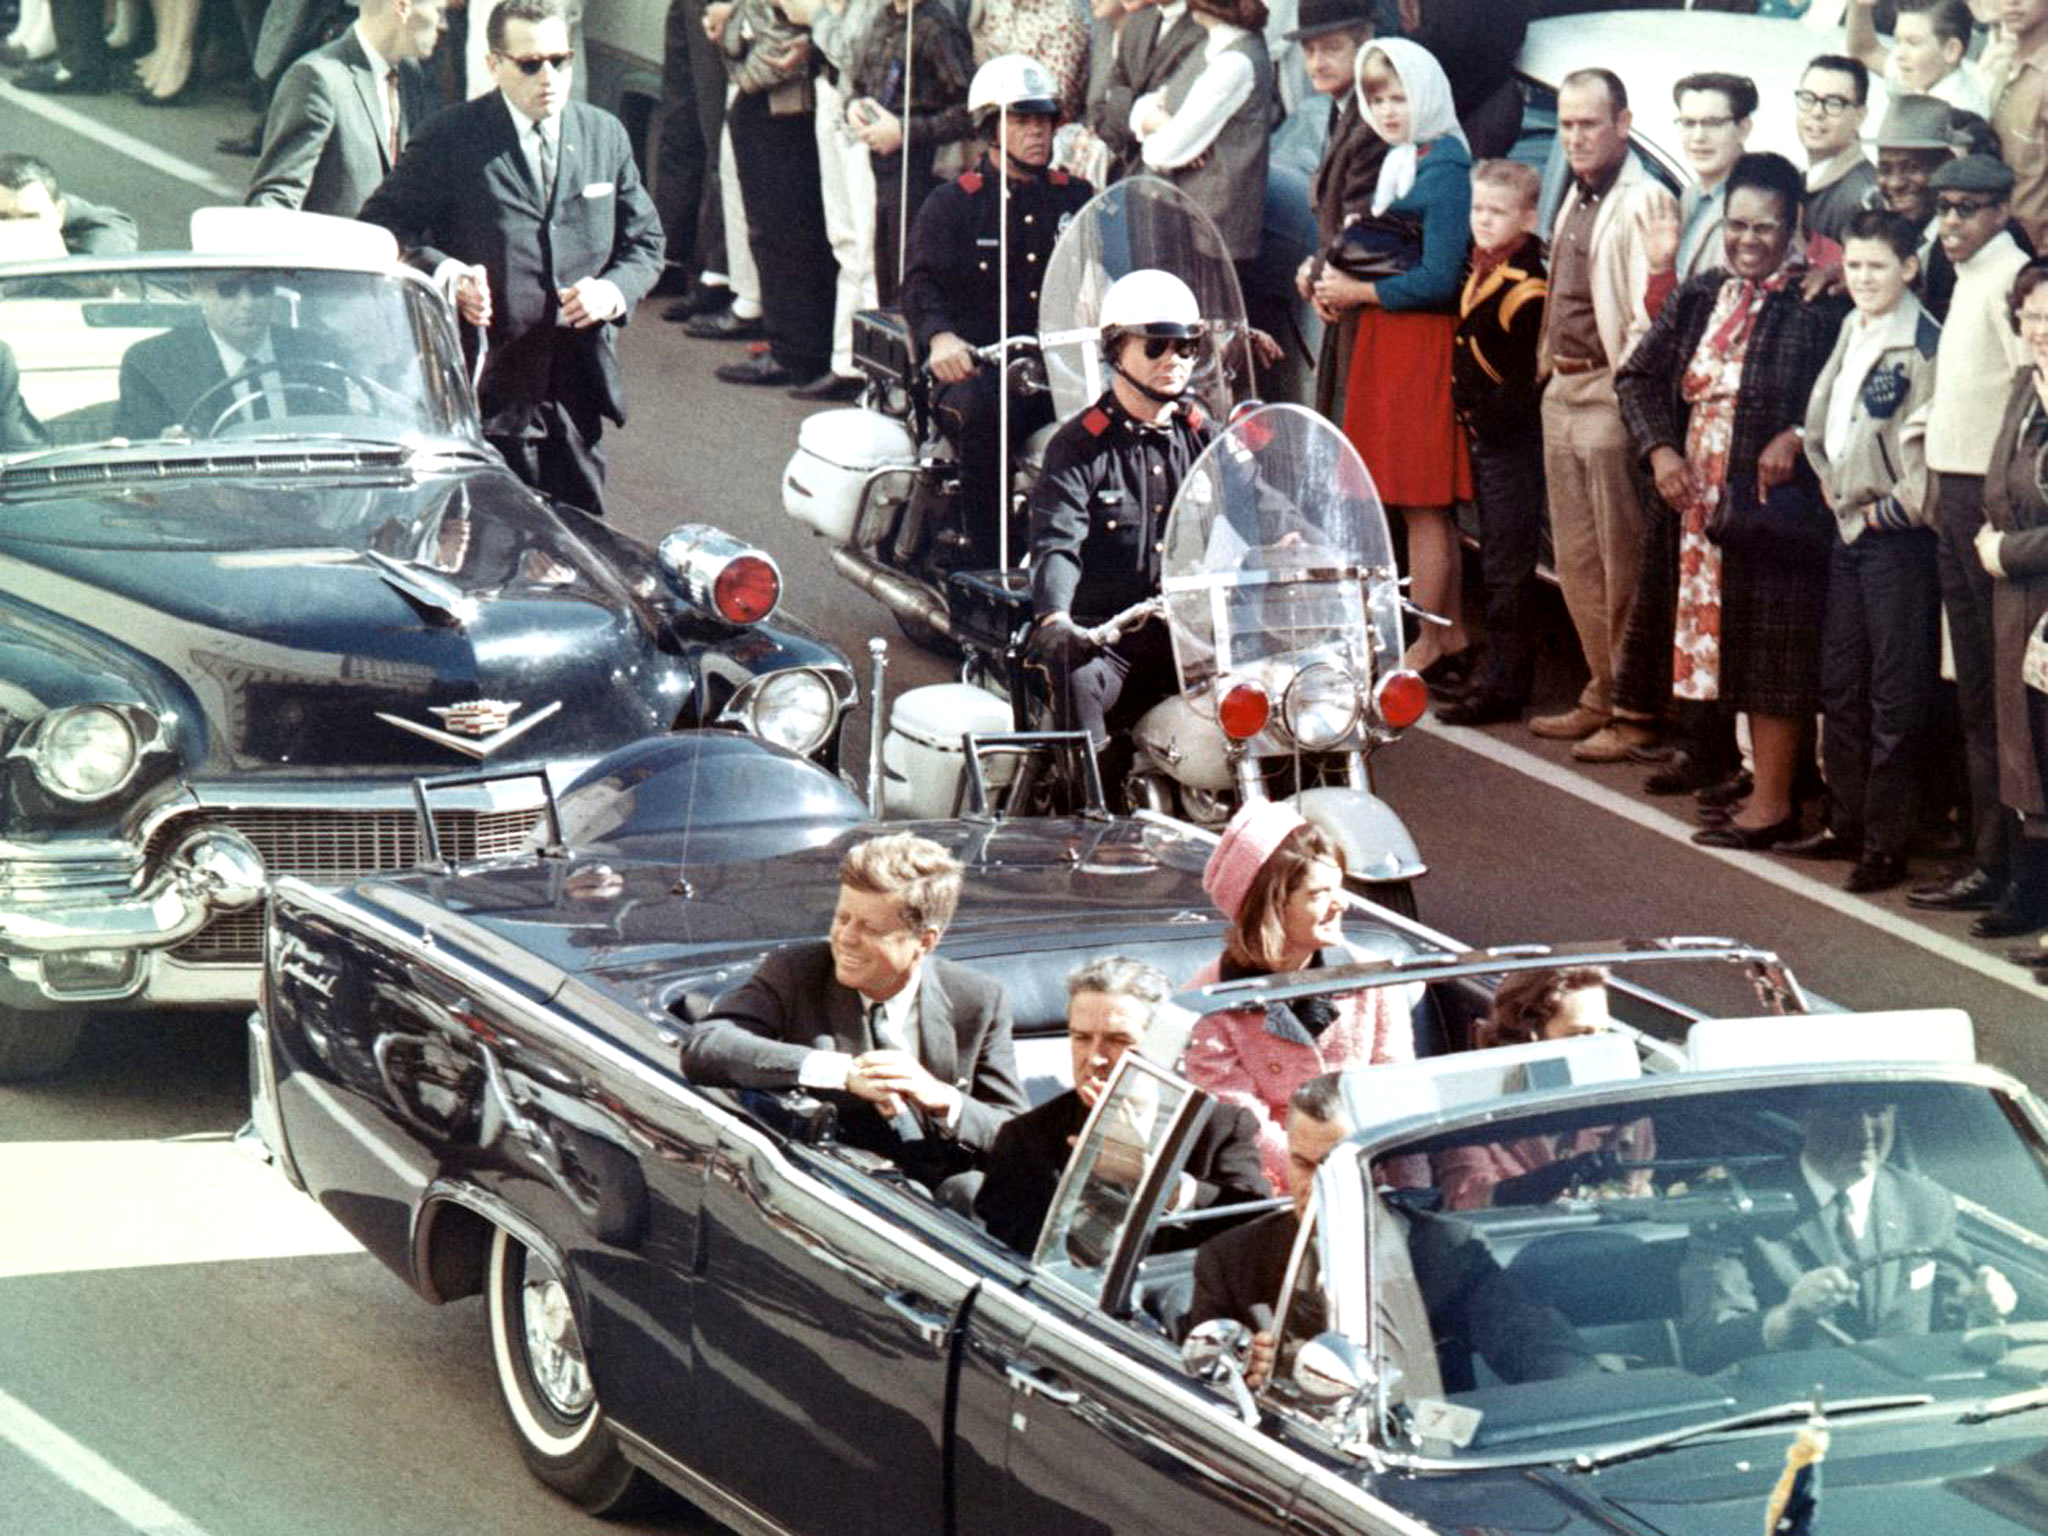 Le cortège présidentiel avant l'assassinat de John Fitzgerald Kennedy. Les théories du complot restent vivaces plus de 50 ans après les faits. © Wikimedia Commons, DP